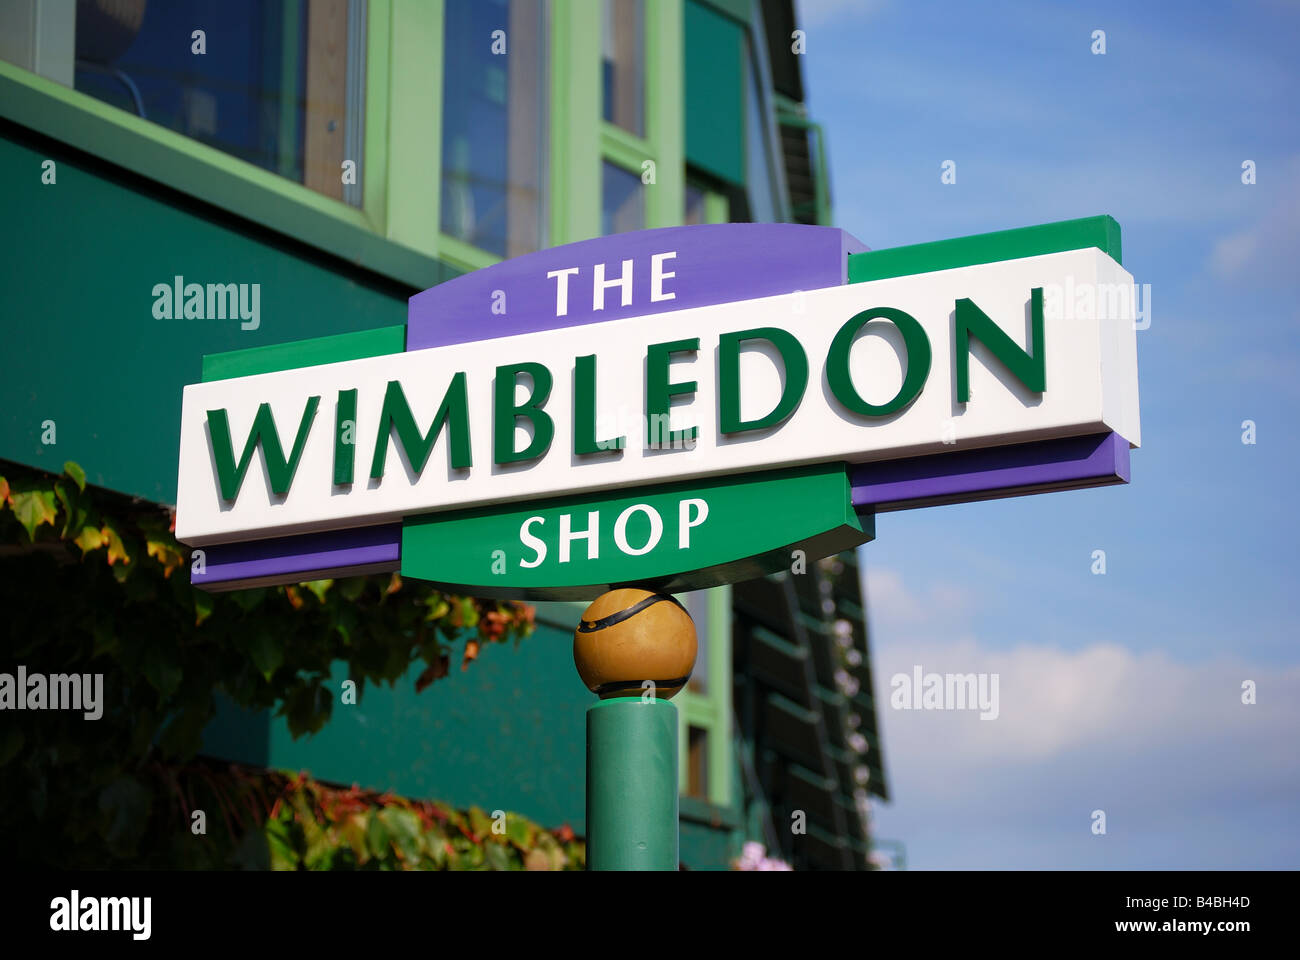 Wimbledon shop hi-res stock photography and images